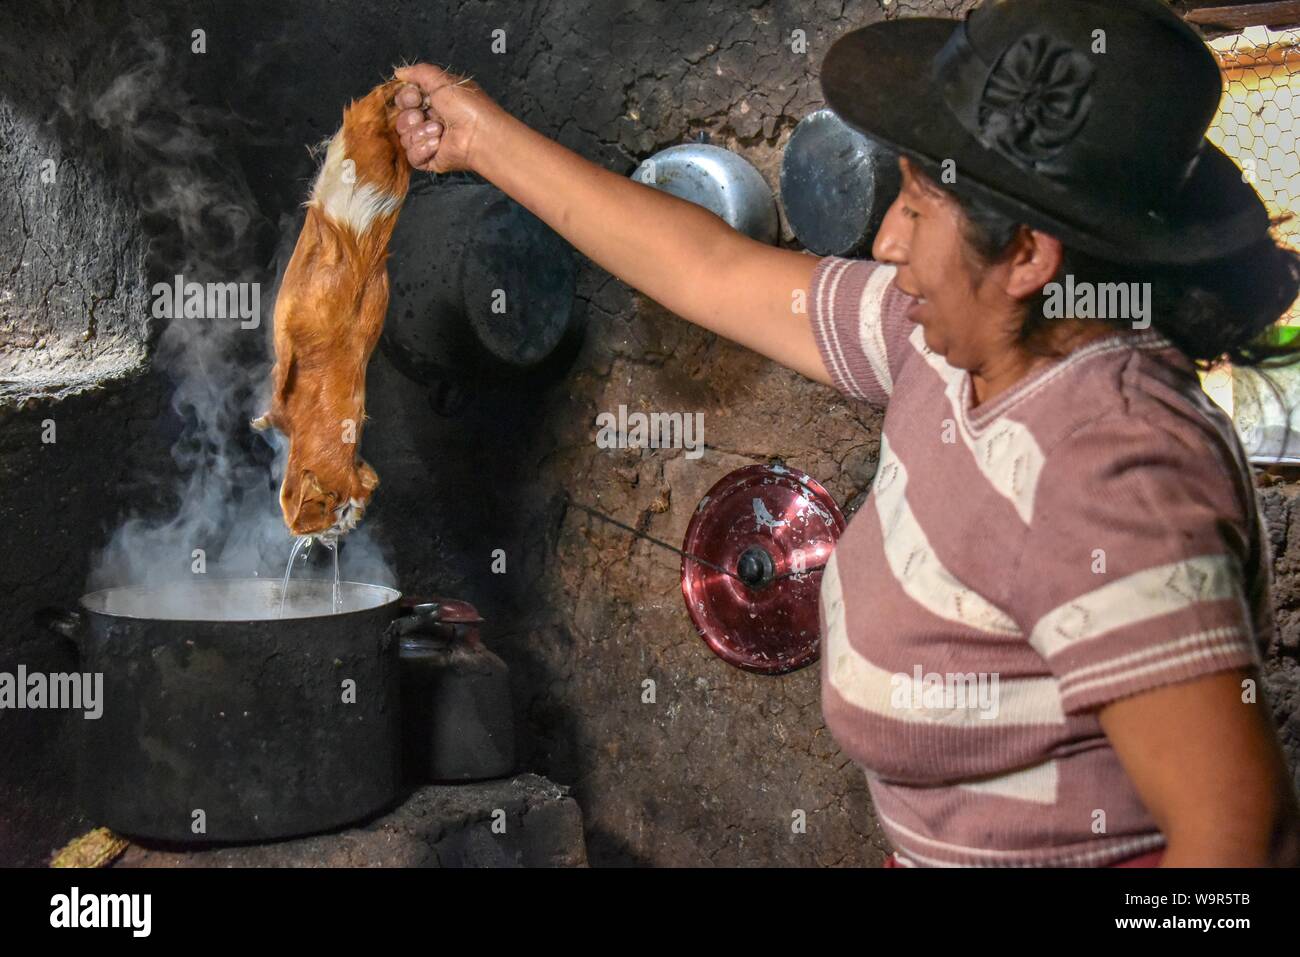 Woman holding locale Cuy cobaye géant, plus de pot d'eau bouillante pour l'épilation, la préparation pour la préparation de plats traditionnels de Cuy, Cusco, Pérou Banque D'Images